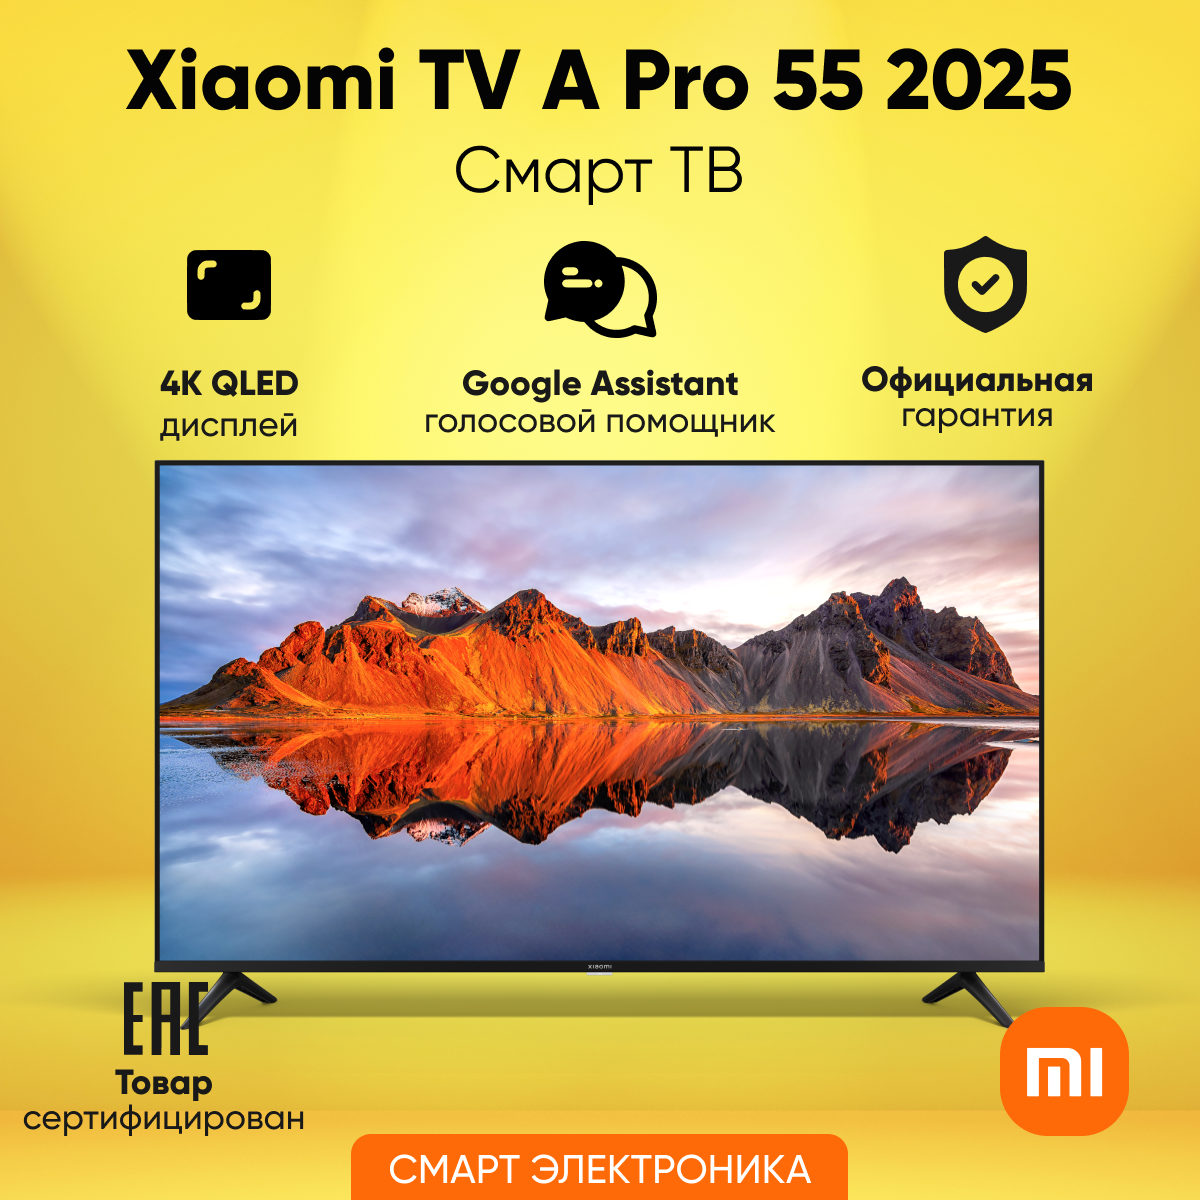 Телевизор Xiaomi TV A Pro 55" 2025